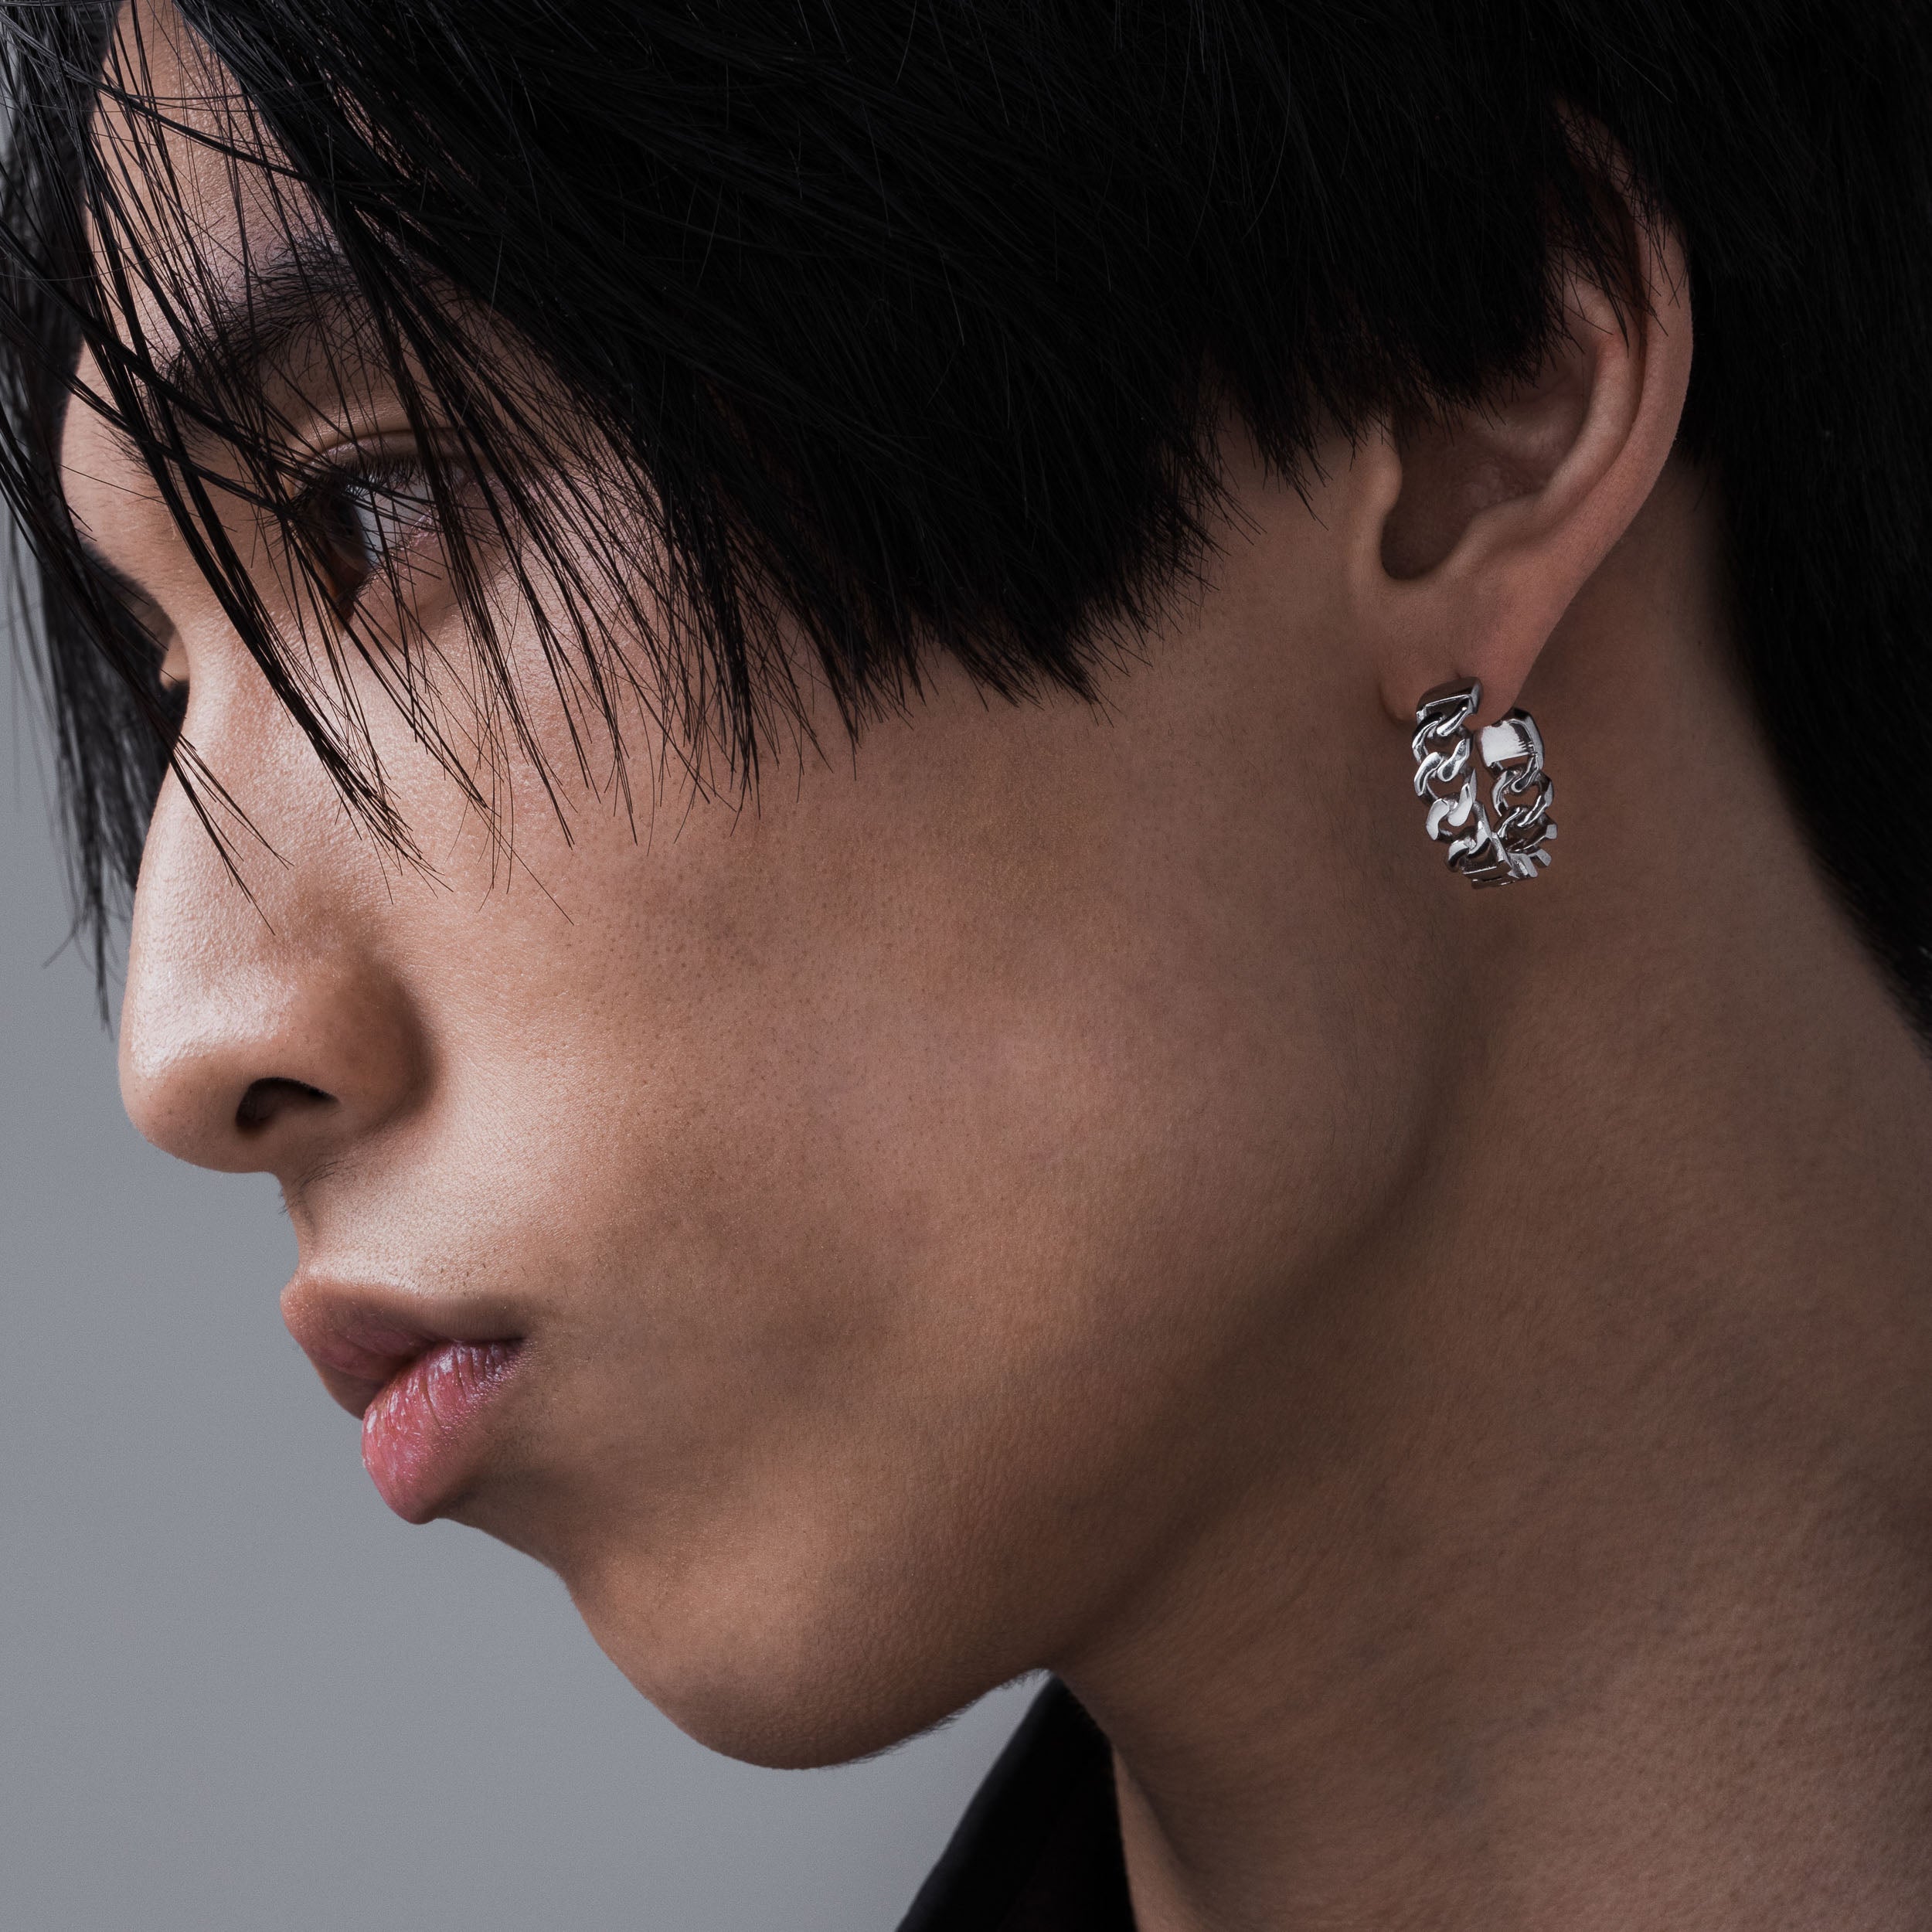 diamond earrings for men